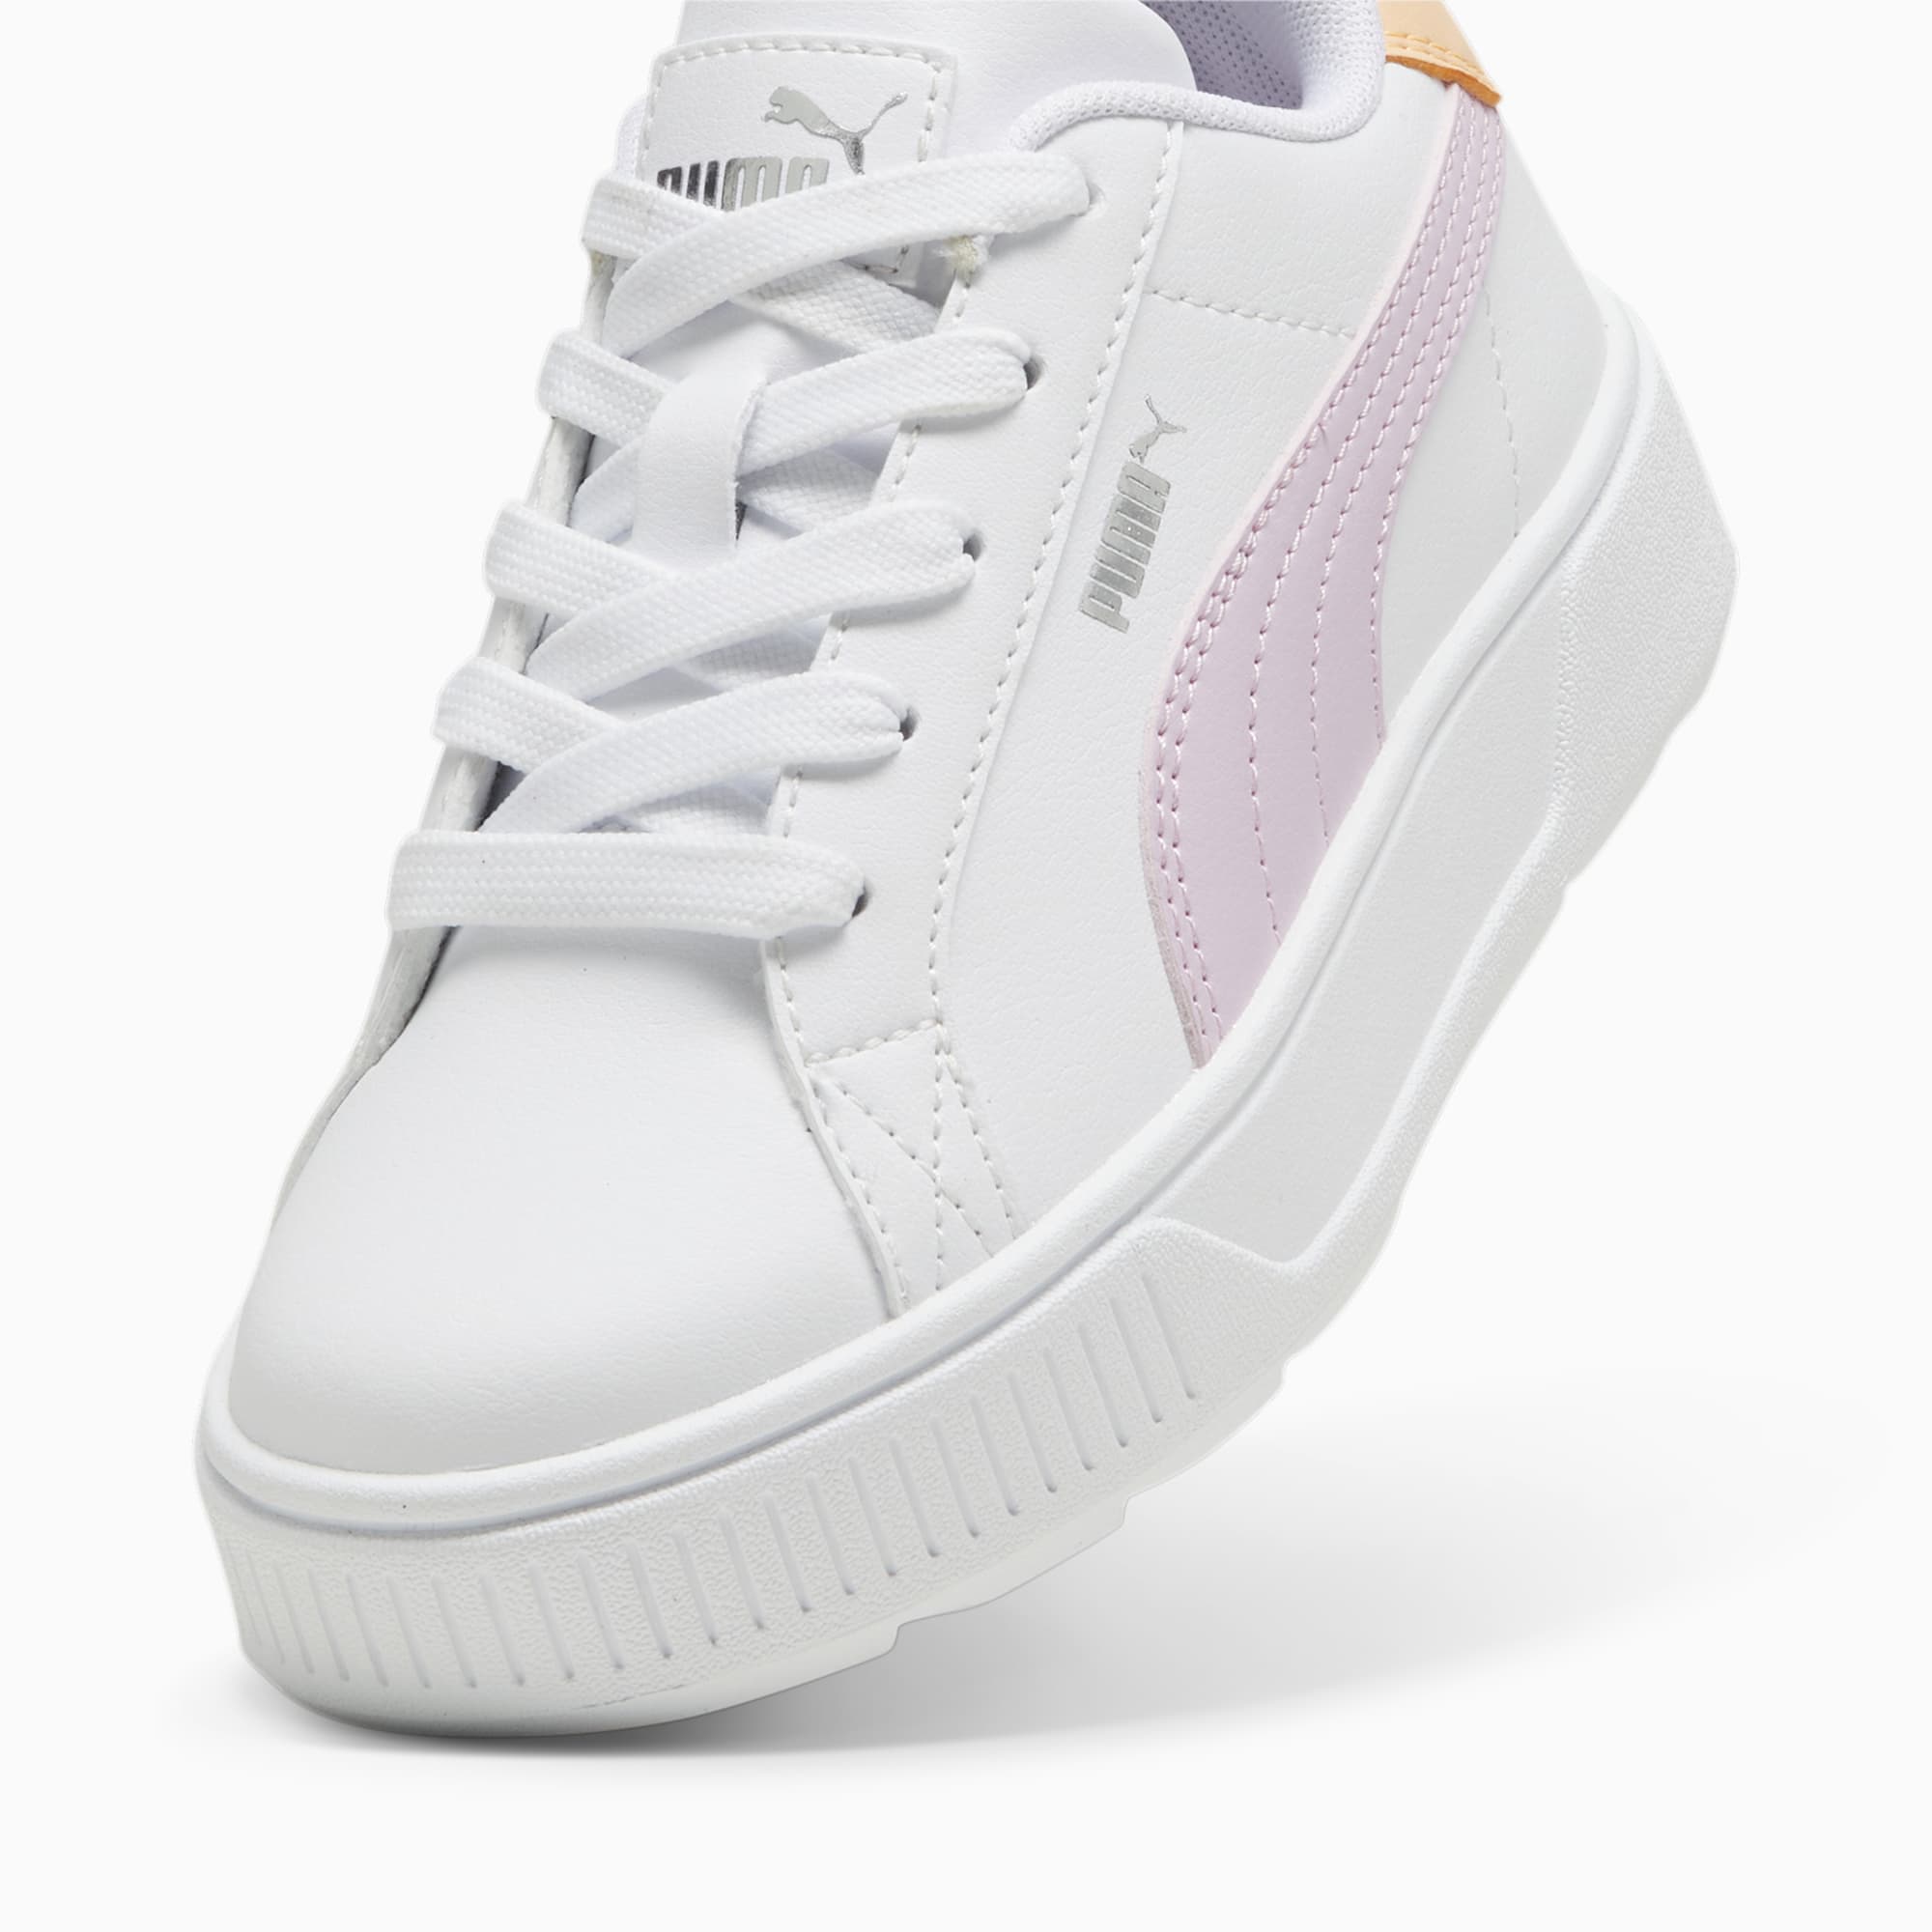 PUMA Karmen L Sneakers Kids, White/Grape Mist/Silver, Size 32, Shoes